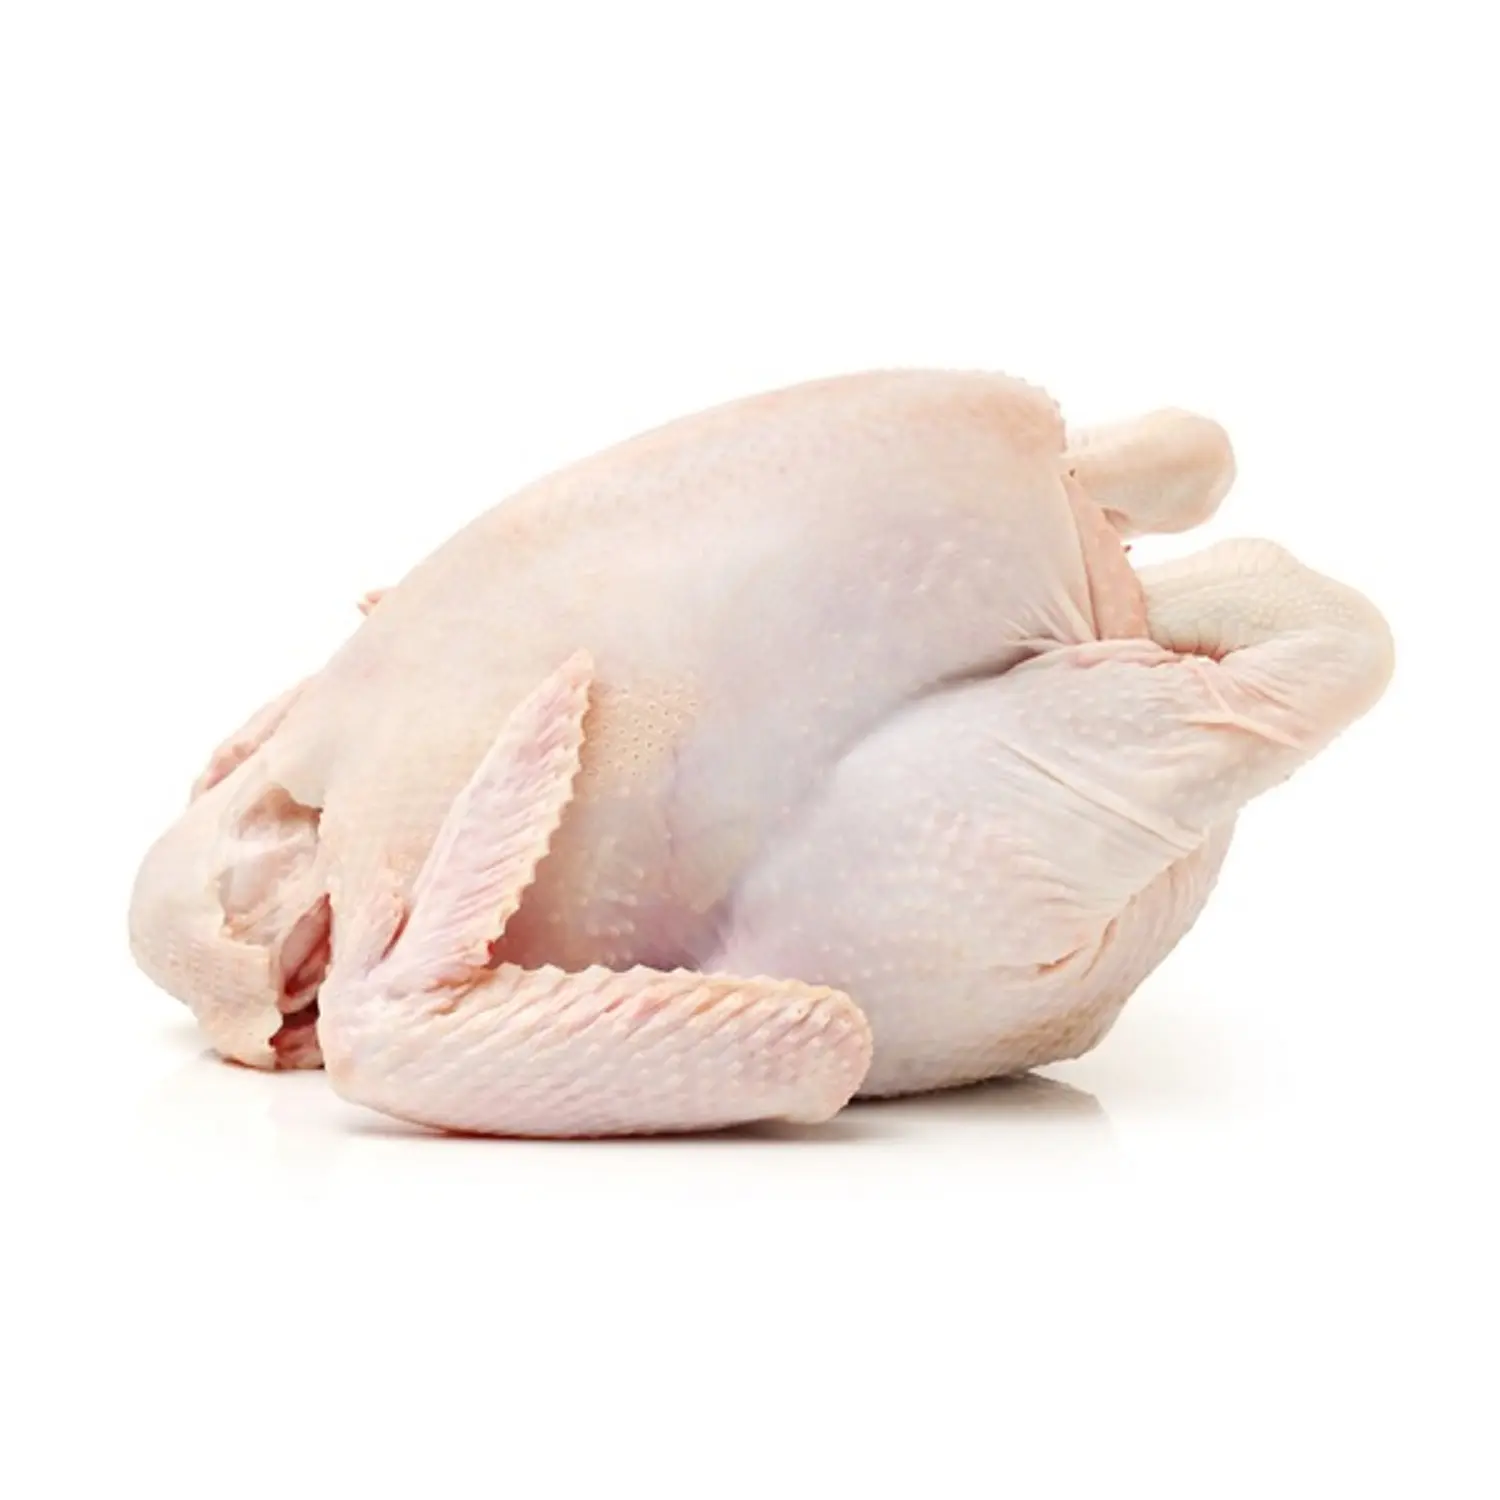 עוף קפוא באיכות גבוהה מחיר זול סיטונאי מברזיל חלאל עוף שלם קפוא וחלקים עוף שלם קפוא